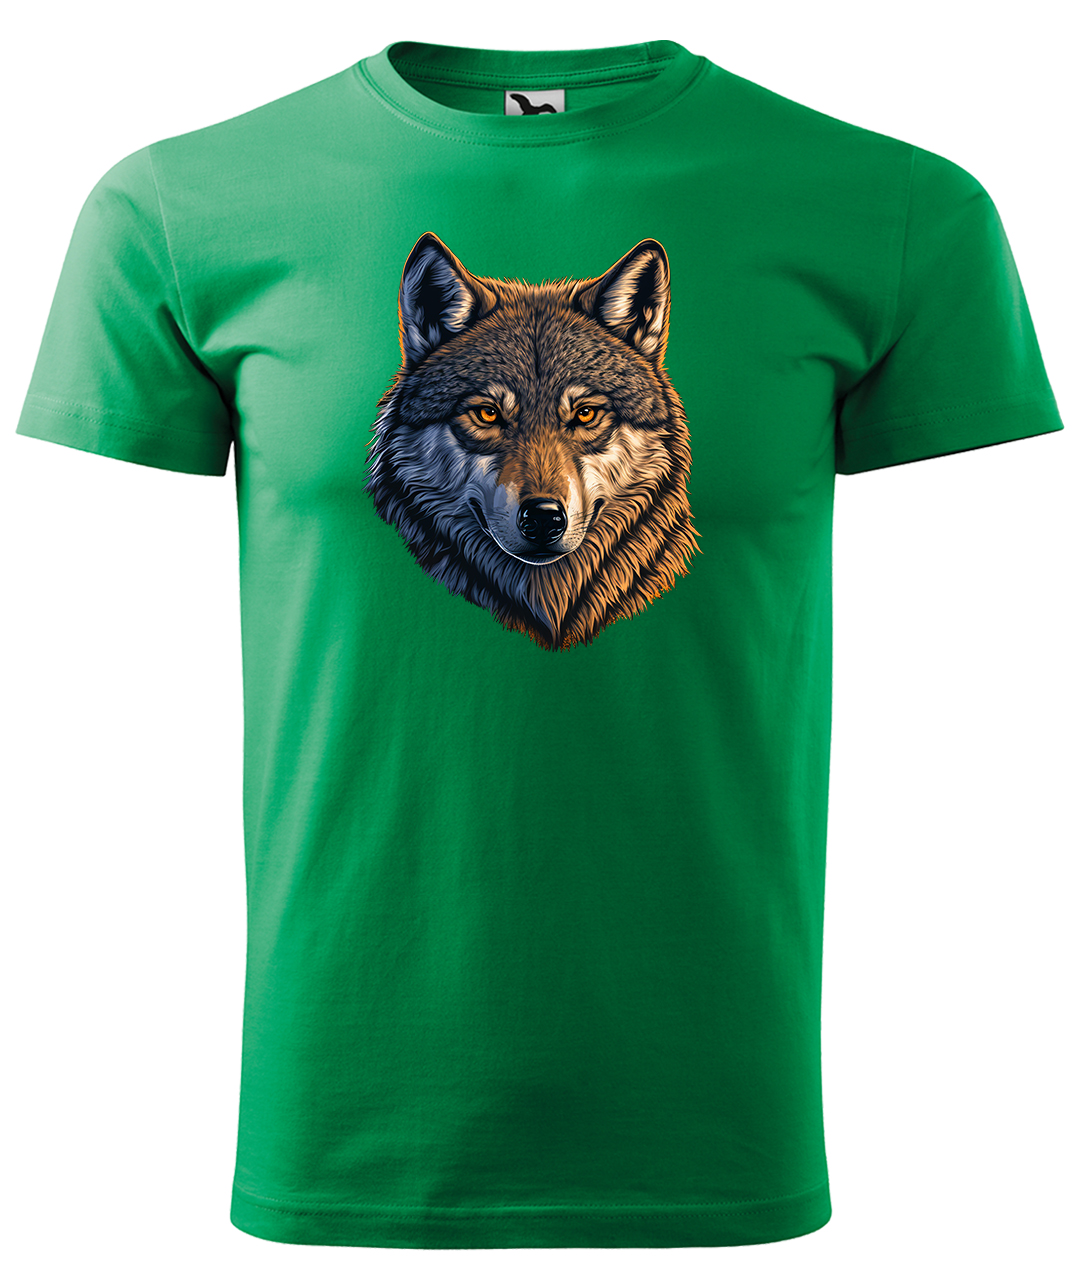 Dětské tričko s vlkem - Hlava vlka Velikost: 4 roky / 110 cm, Barva: Středně zelená (16), Délka rukávu: Krátký rukáv